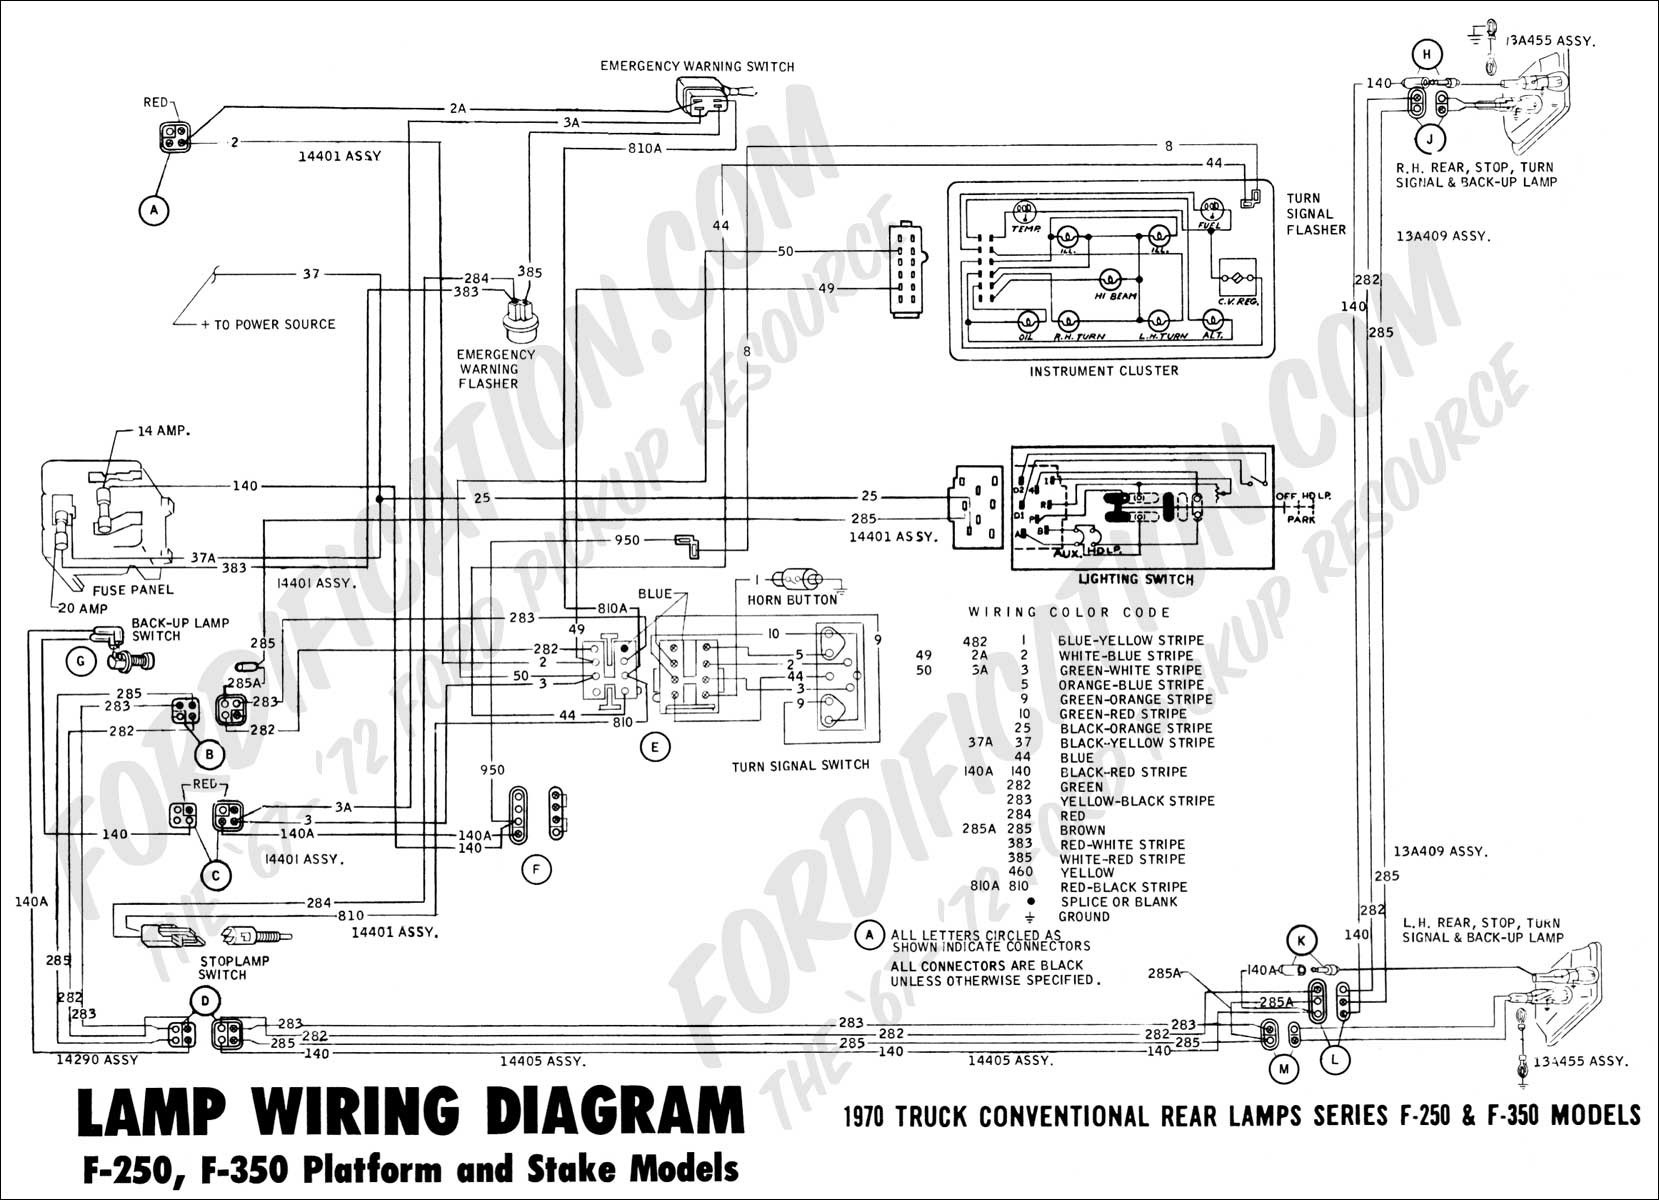 Stop Light Switch Wiring Diagram Elegant Brake Light Wiring Diagram Diagram Of Stop Light Switch Wiring Diagram